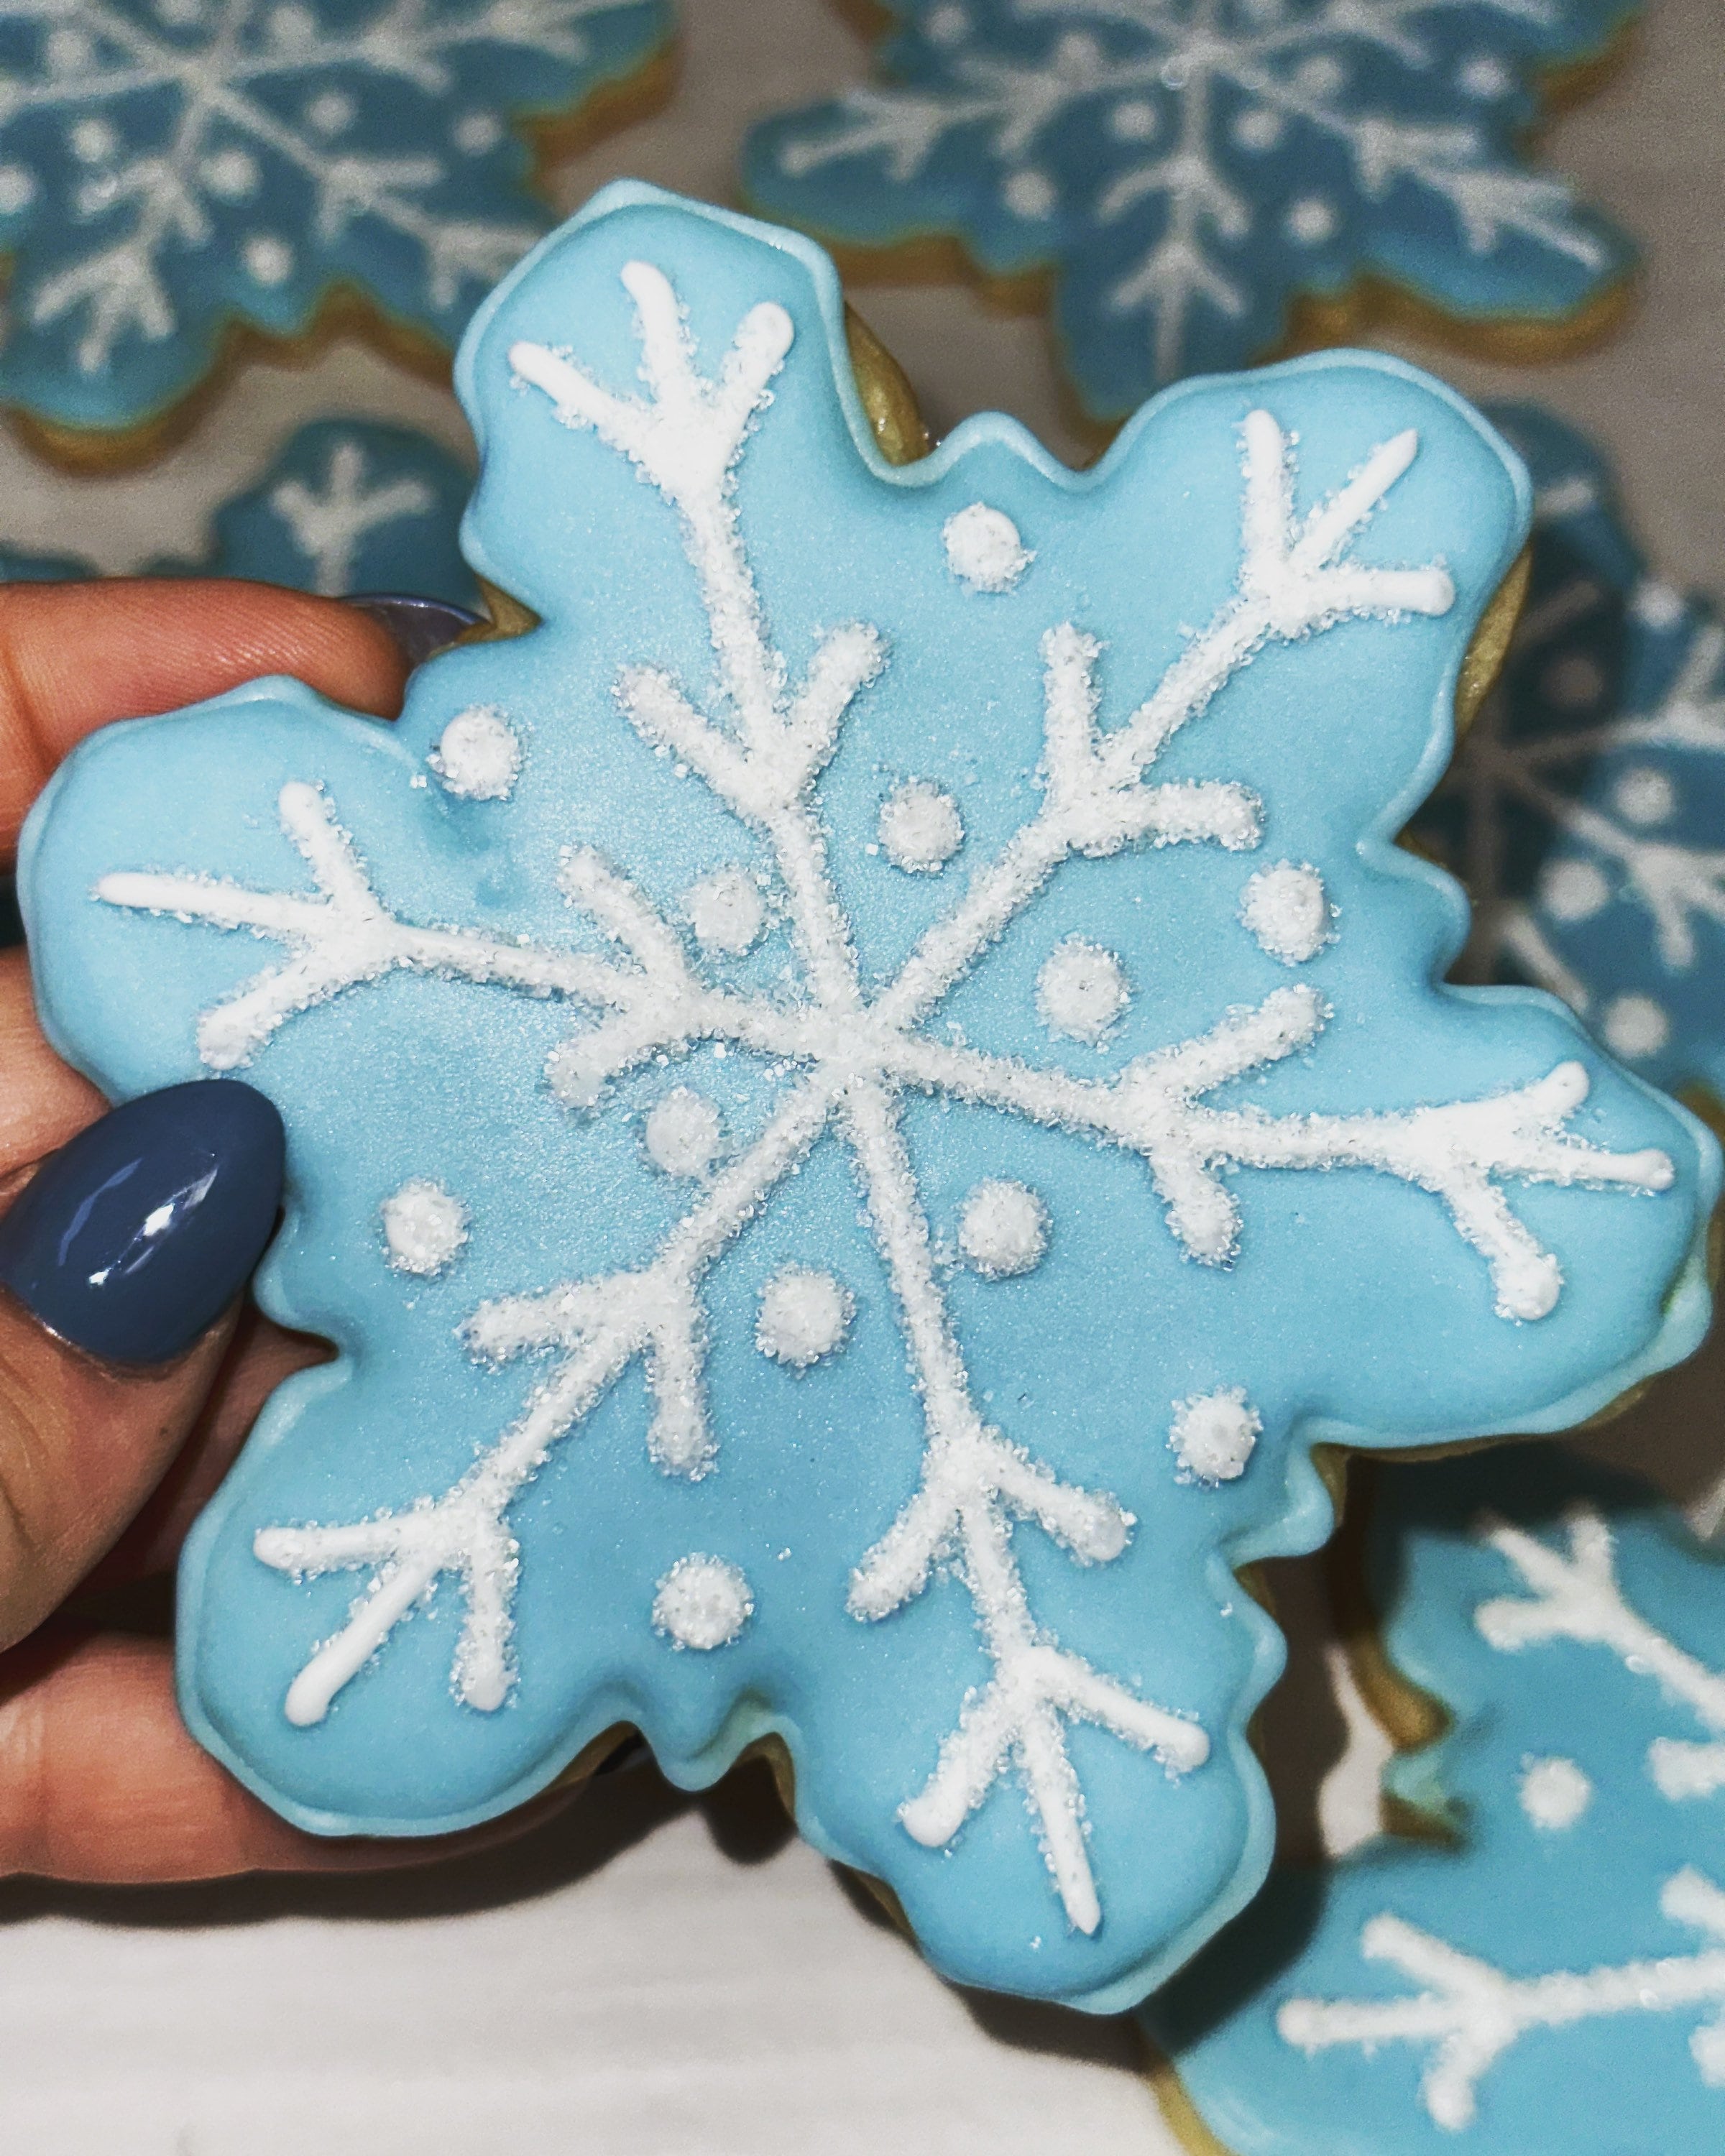 Hãy nhâm nhi bánh quy tuyết đông lạnh đầy mùi vị ngọt ngào và thơm phức từ Etsy Pháp. Hình ảnh liên quan sẽ giúp bạn trải nghiệm cảm giác thoải mái của mùa đông với những thiết kế ấn tượng của bánh quy tuyết xinh đẹp!